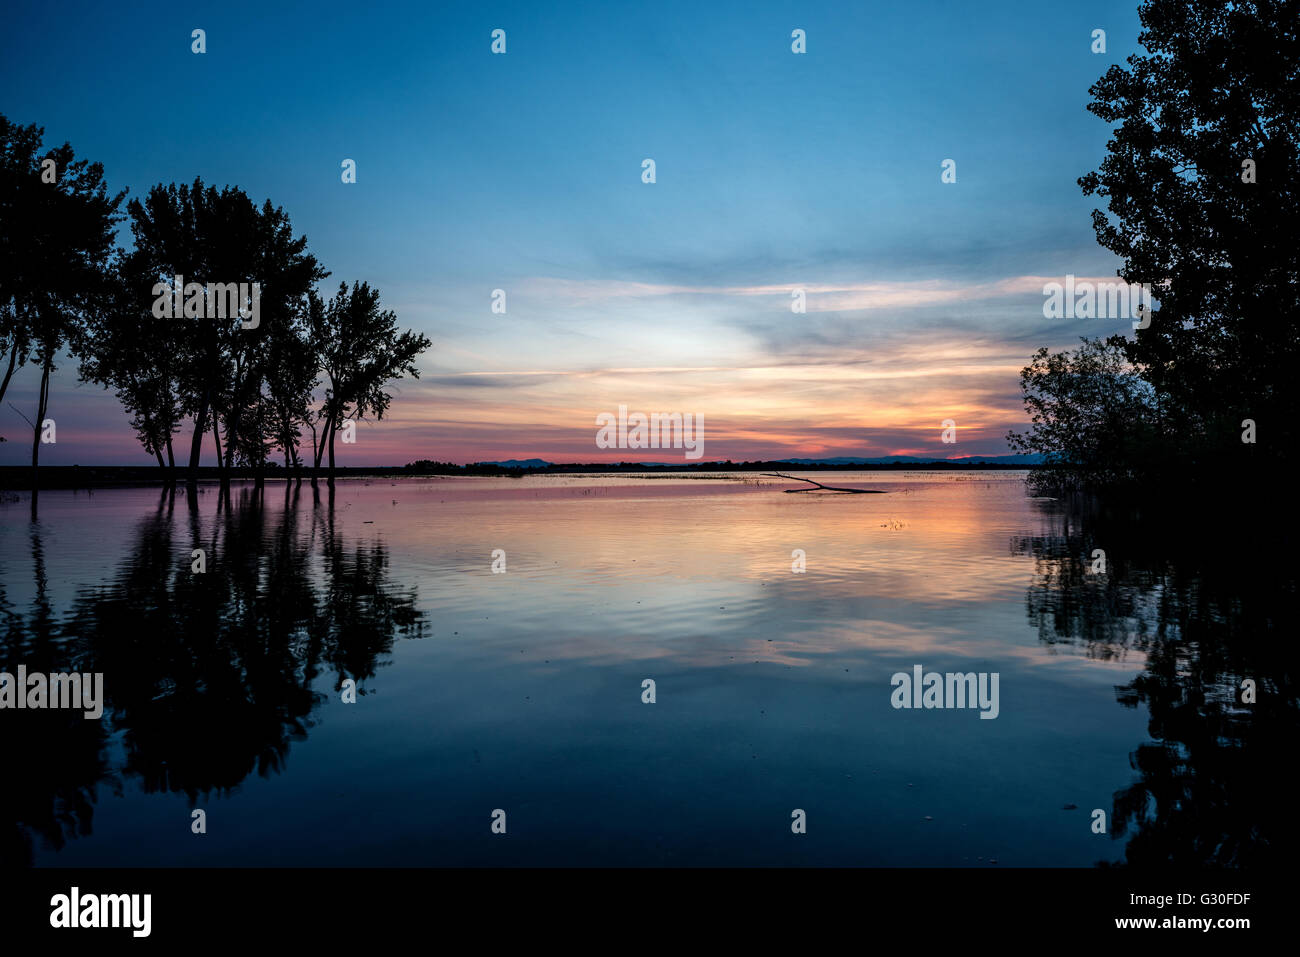 Lake Lowell Idaho sunrise reflection and trees Stock Photo Alamy